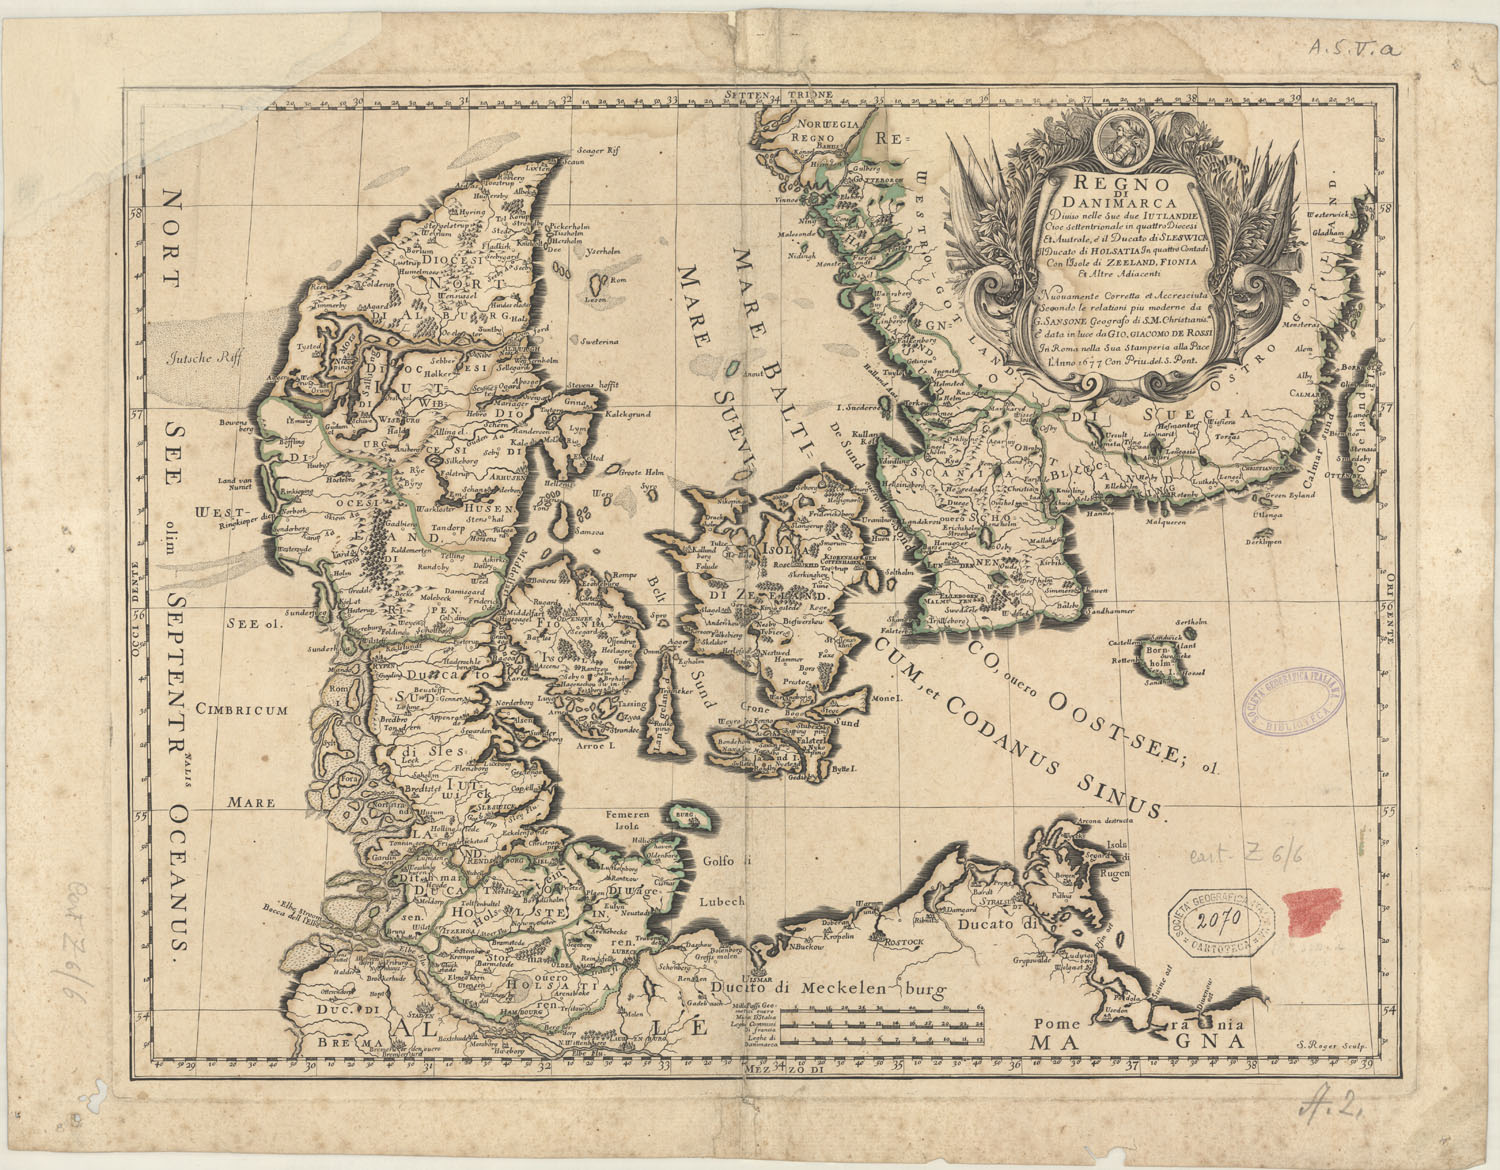 Venerdì Cartografico – G. Sanson, Regno di Danimarca, Roma, 1677